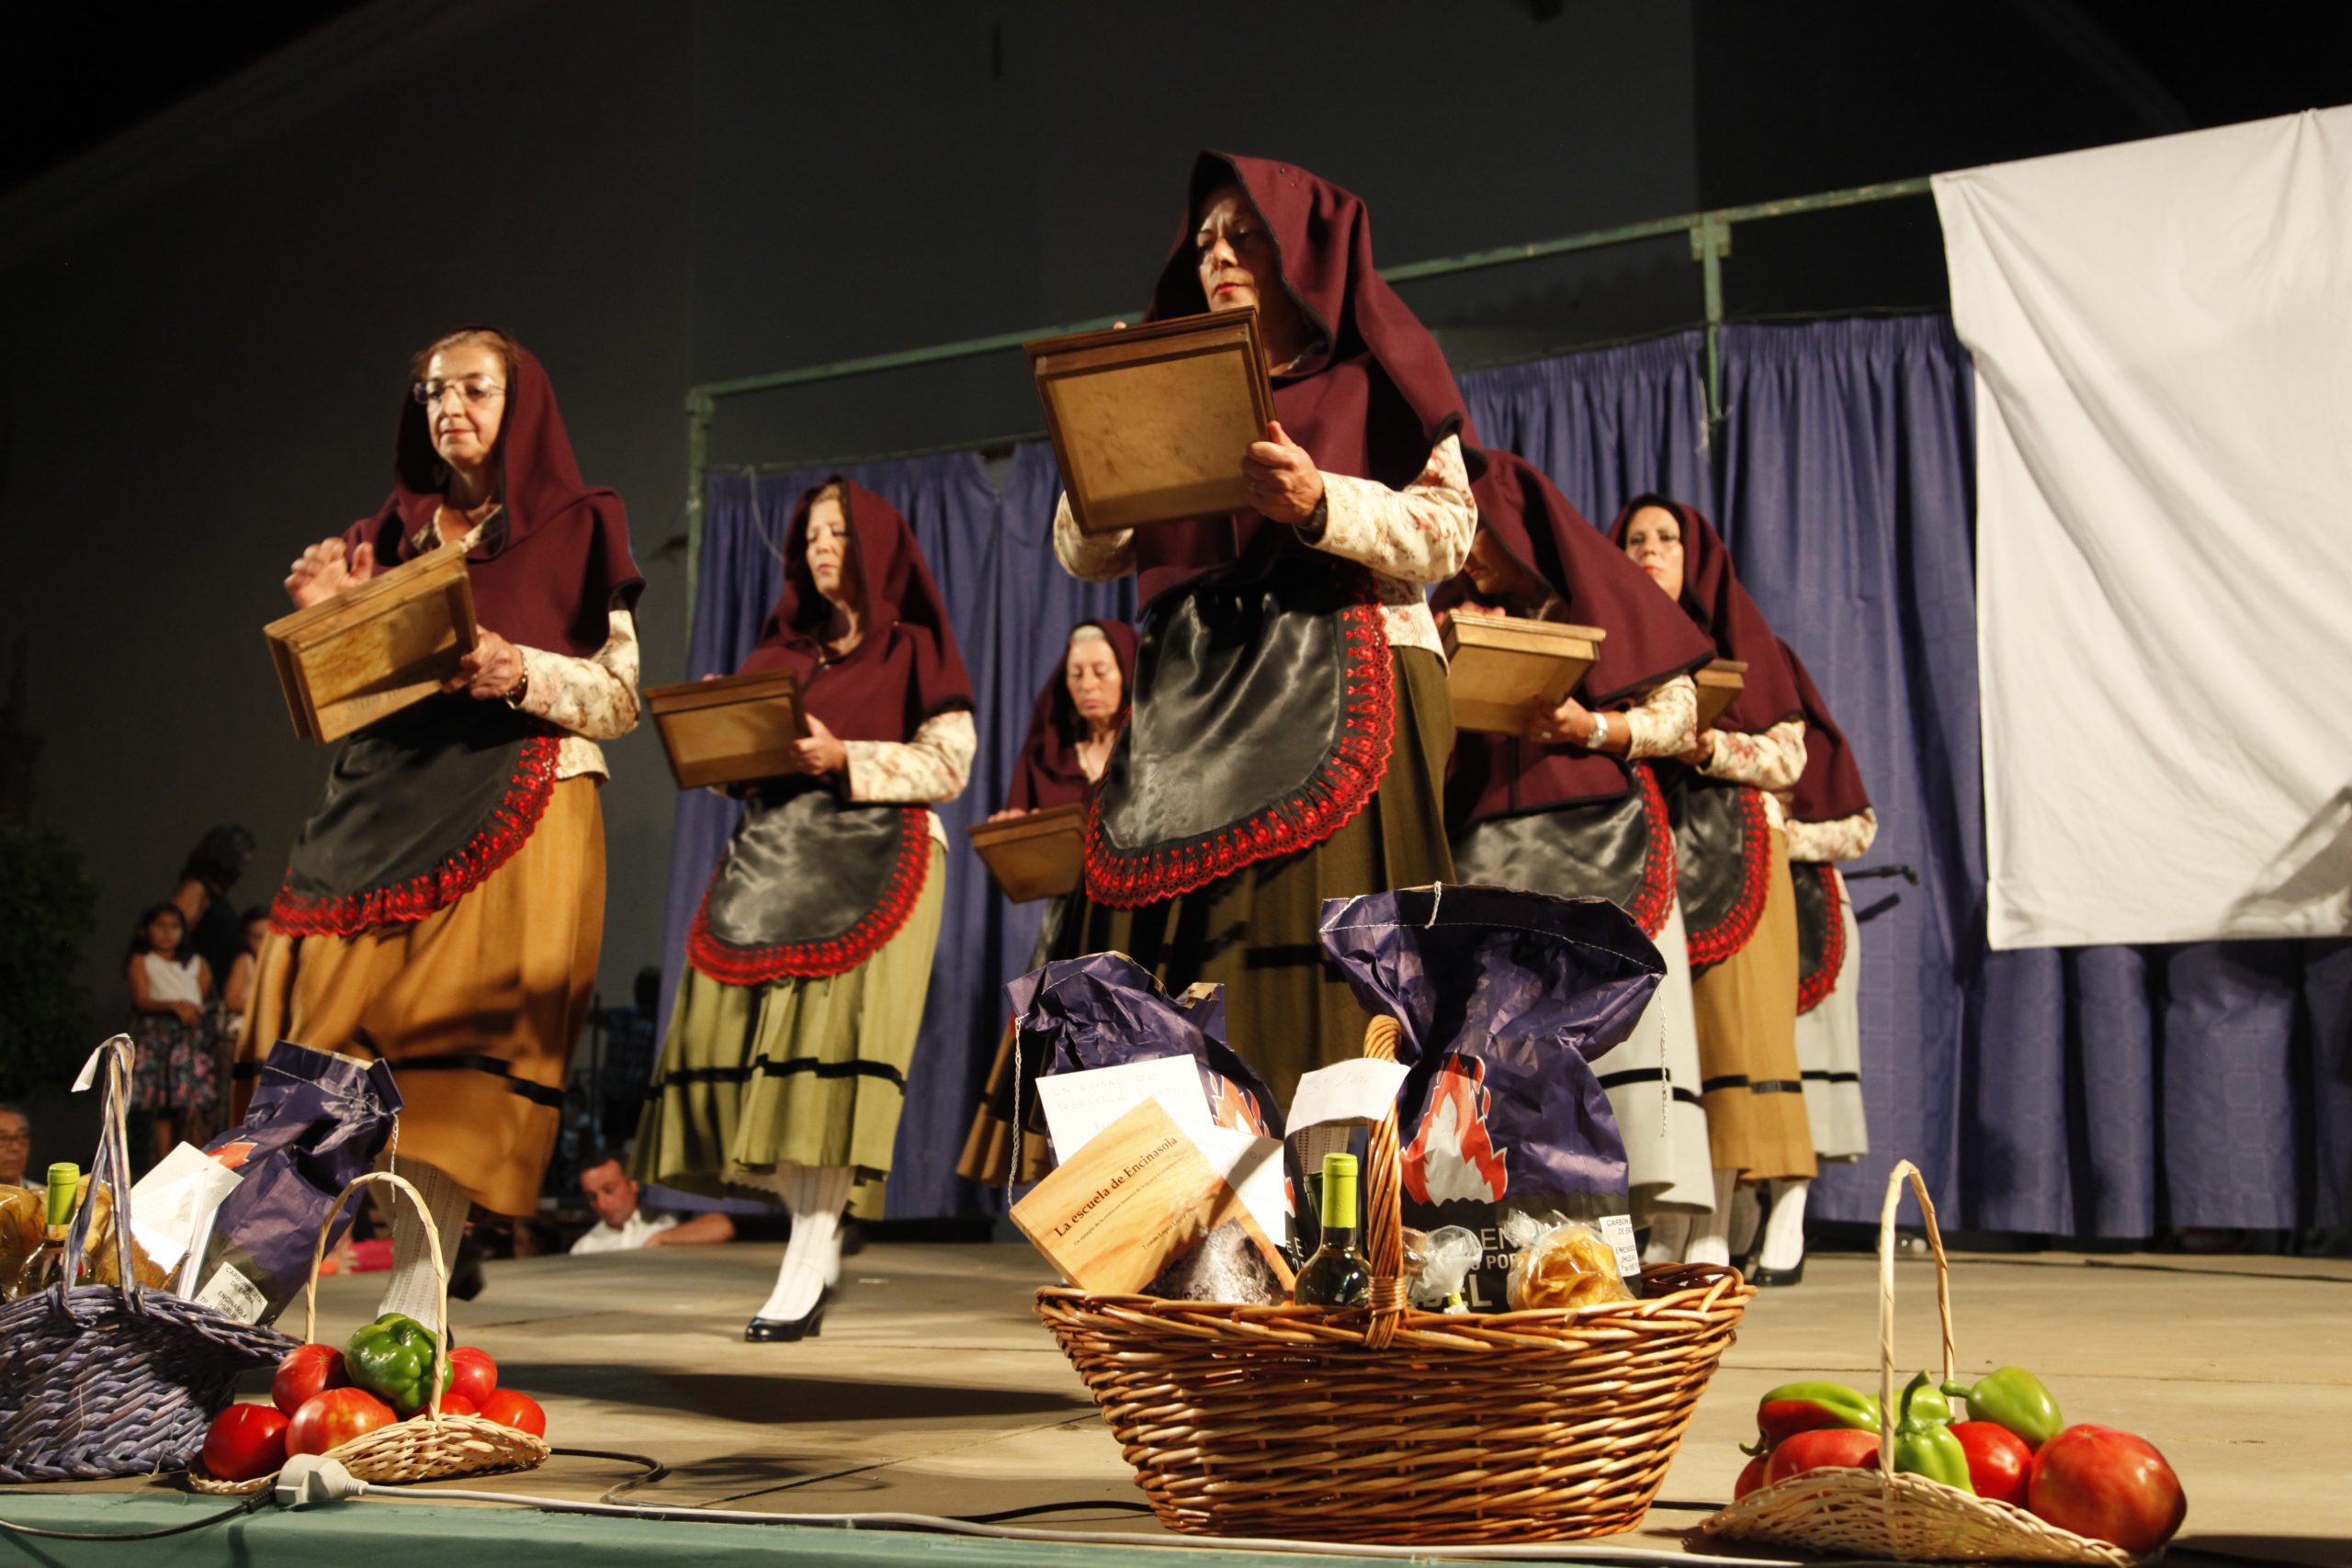 01 Participación de la danza del Pandero en Certamen de Música Tradicional de Encinasola, Huelva